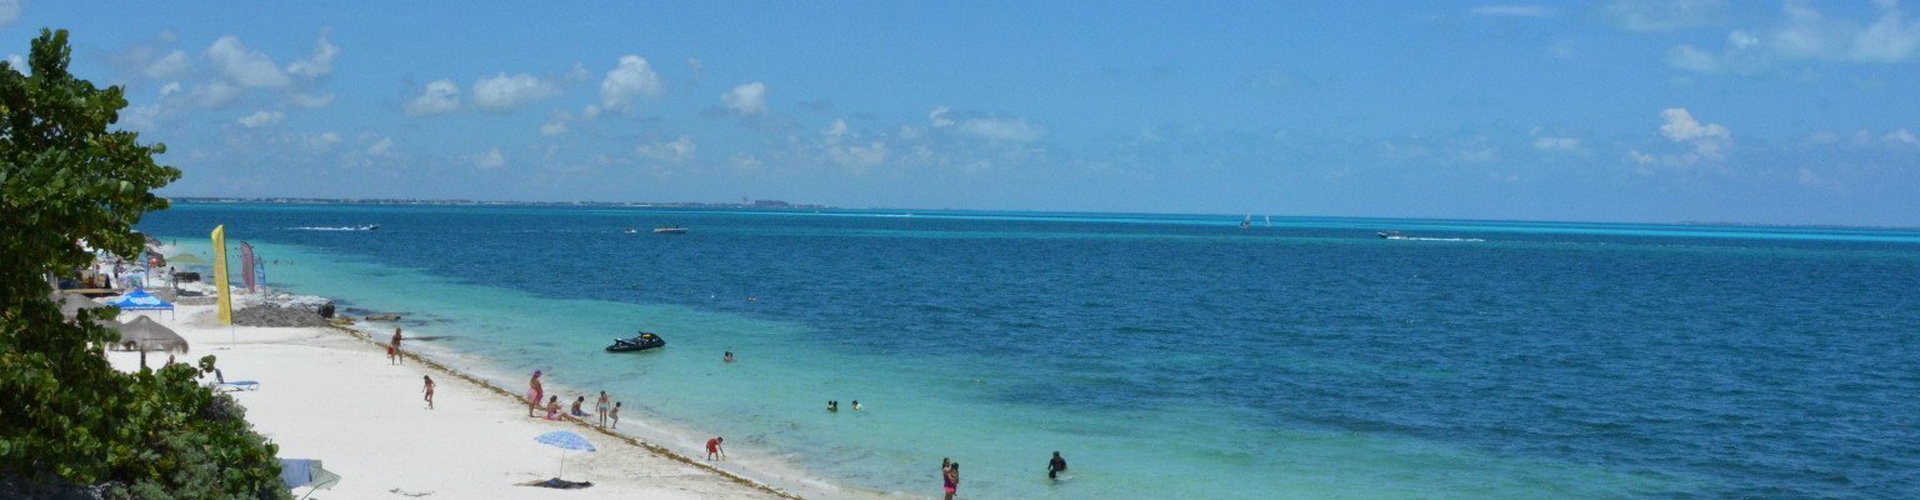 Faranda Maya Caribe Cancún Rediseño - Cancun - 